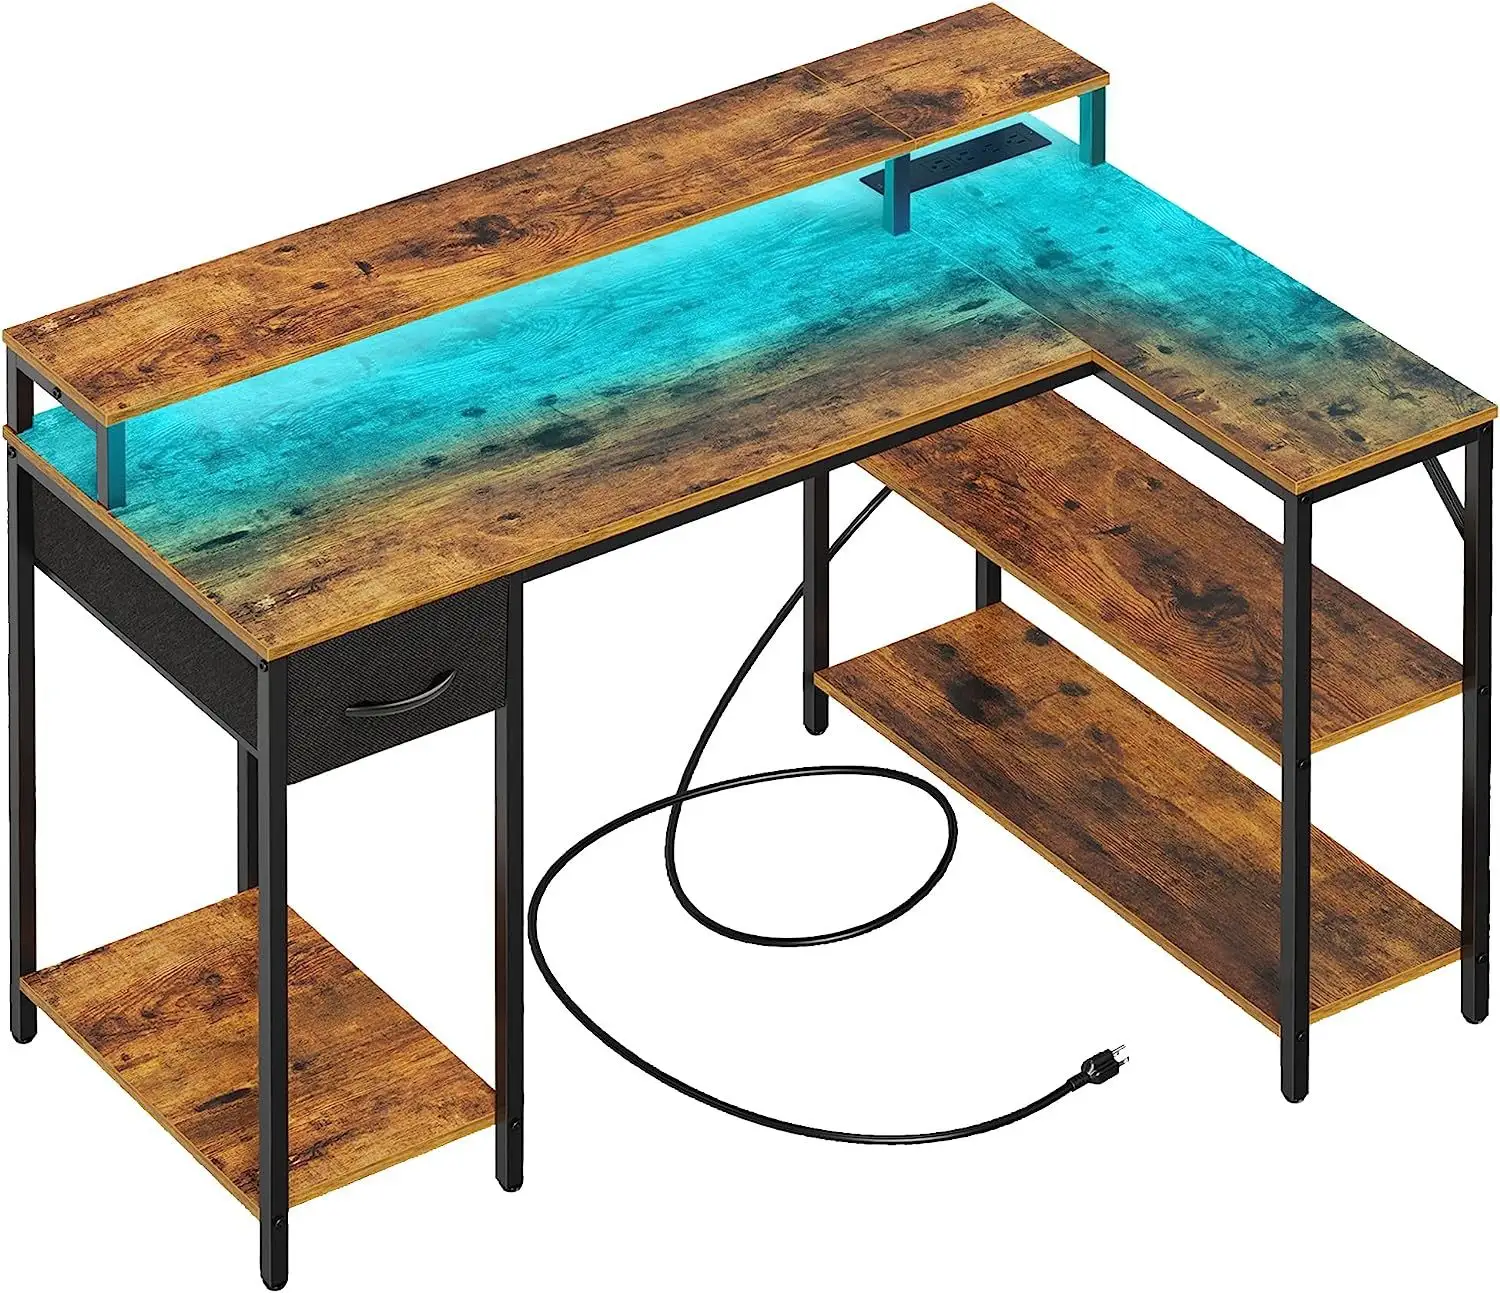 للبيع بالجملة طاولة كمبيوتر بتصميم جديد مناسبة للمكتب والمنزل